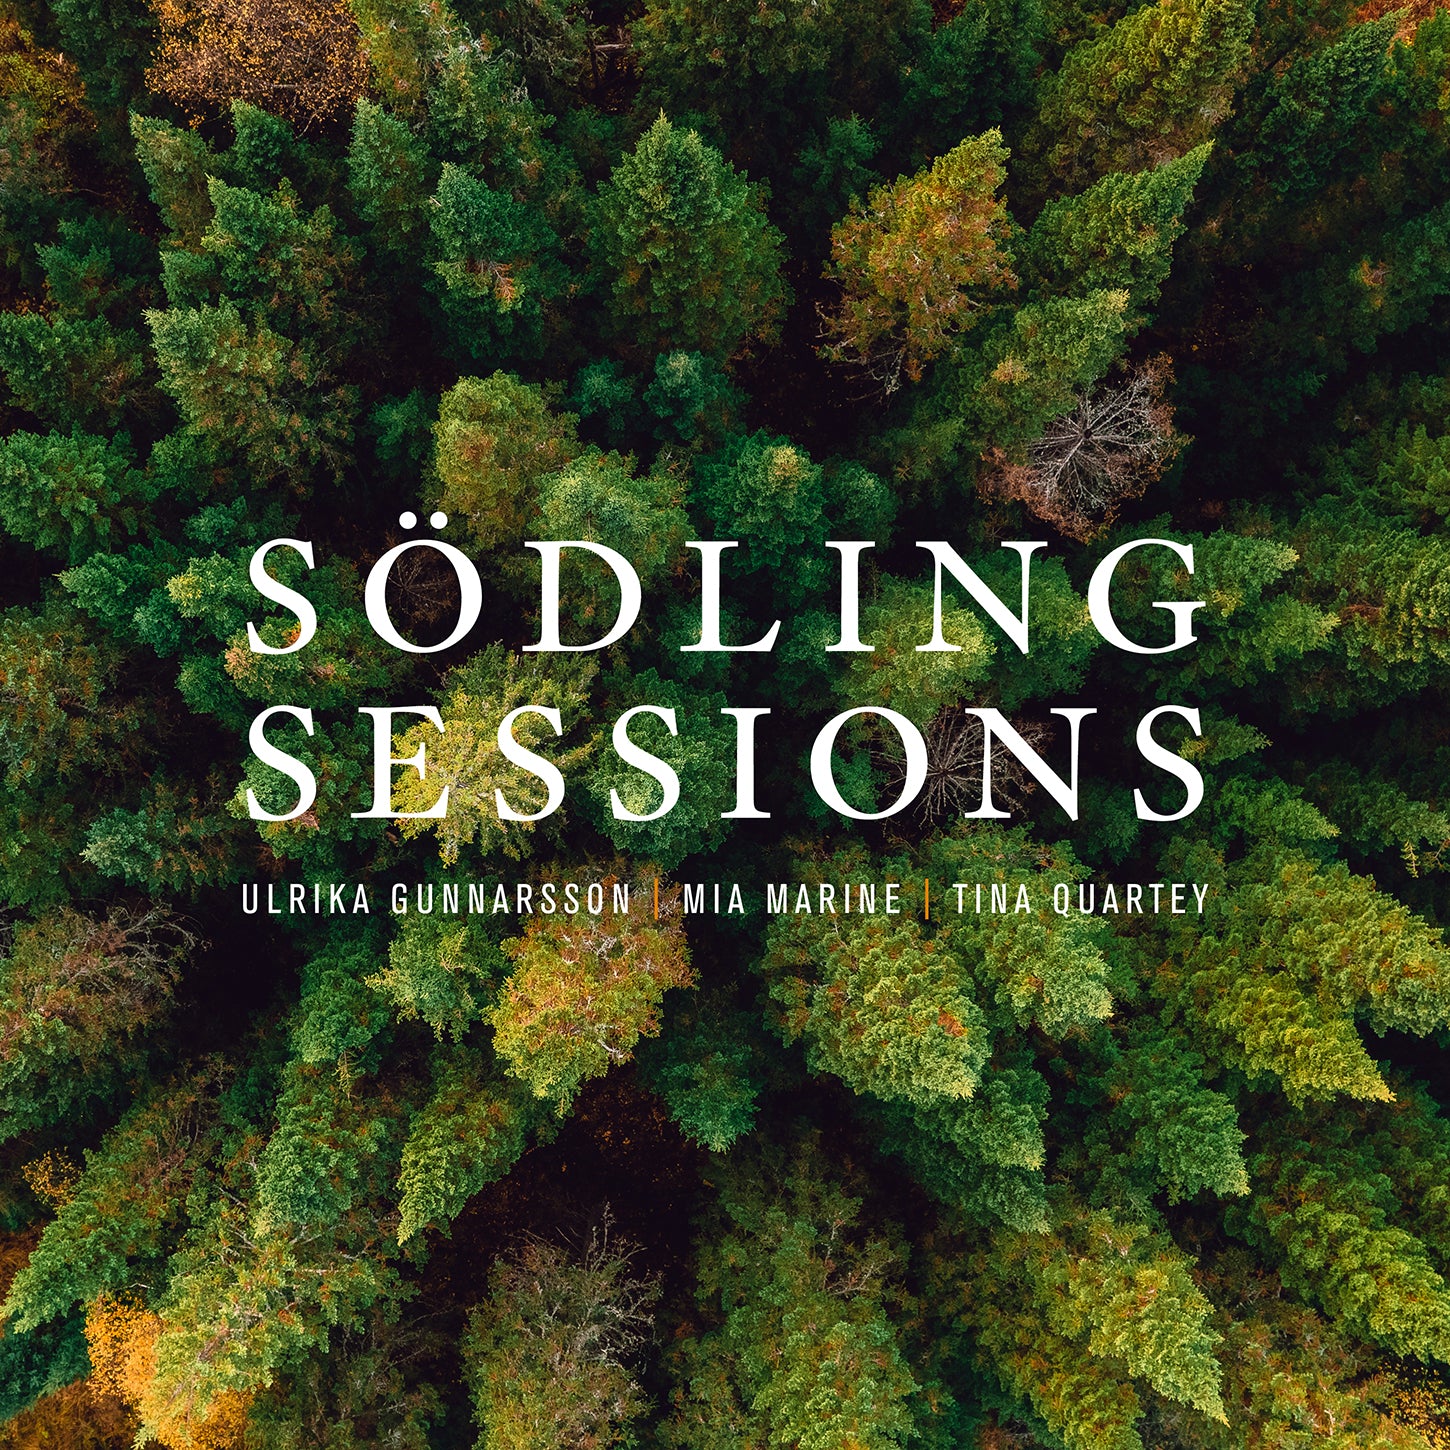 Södling Sessions - Folk Songs of Sweden / Gunnarsson, Marin, Quartey